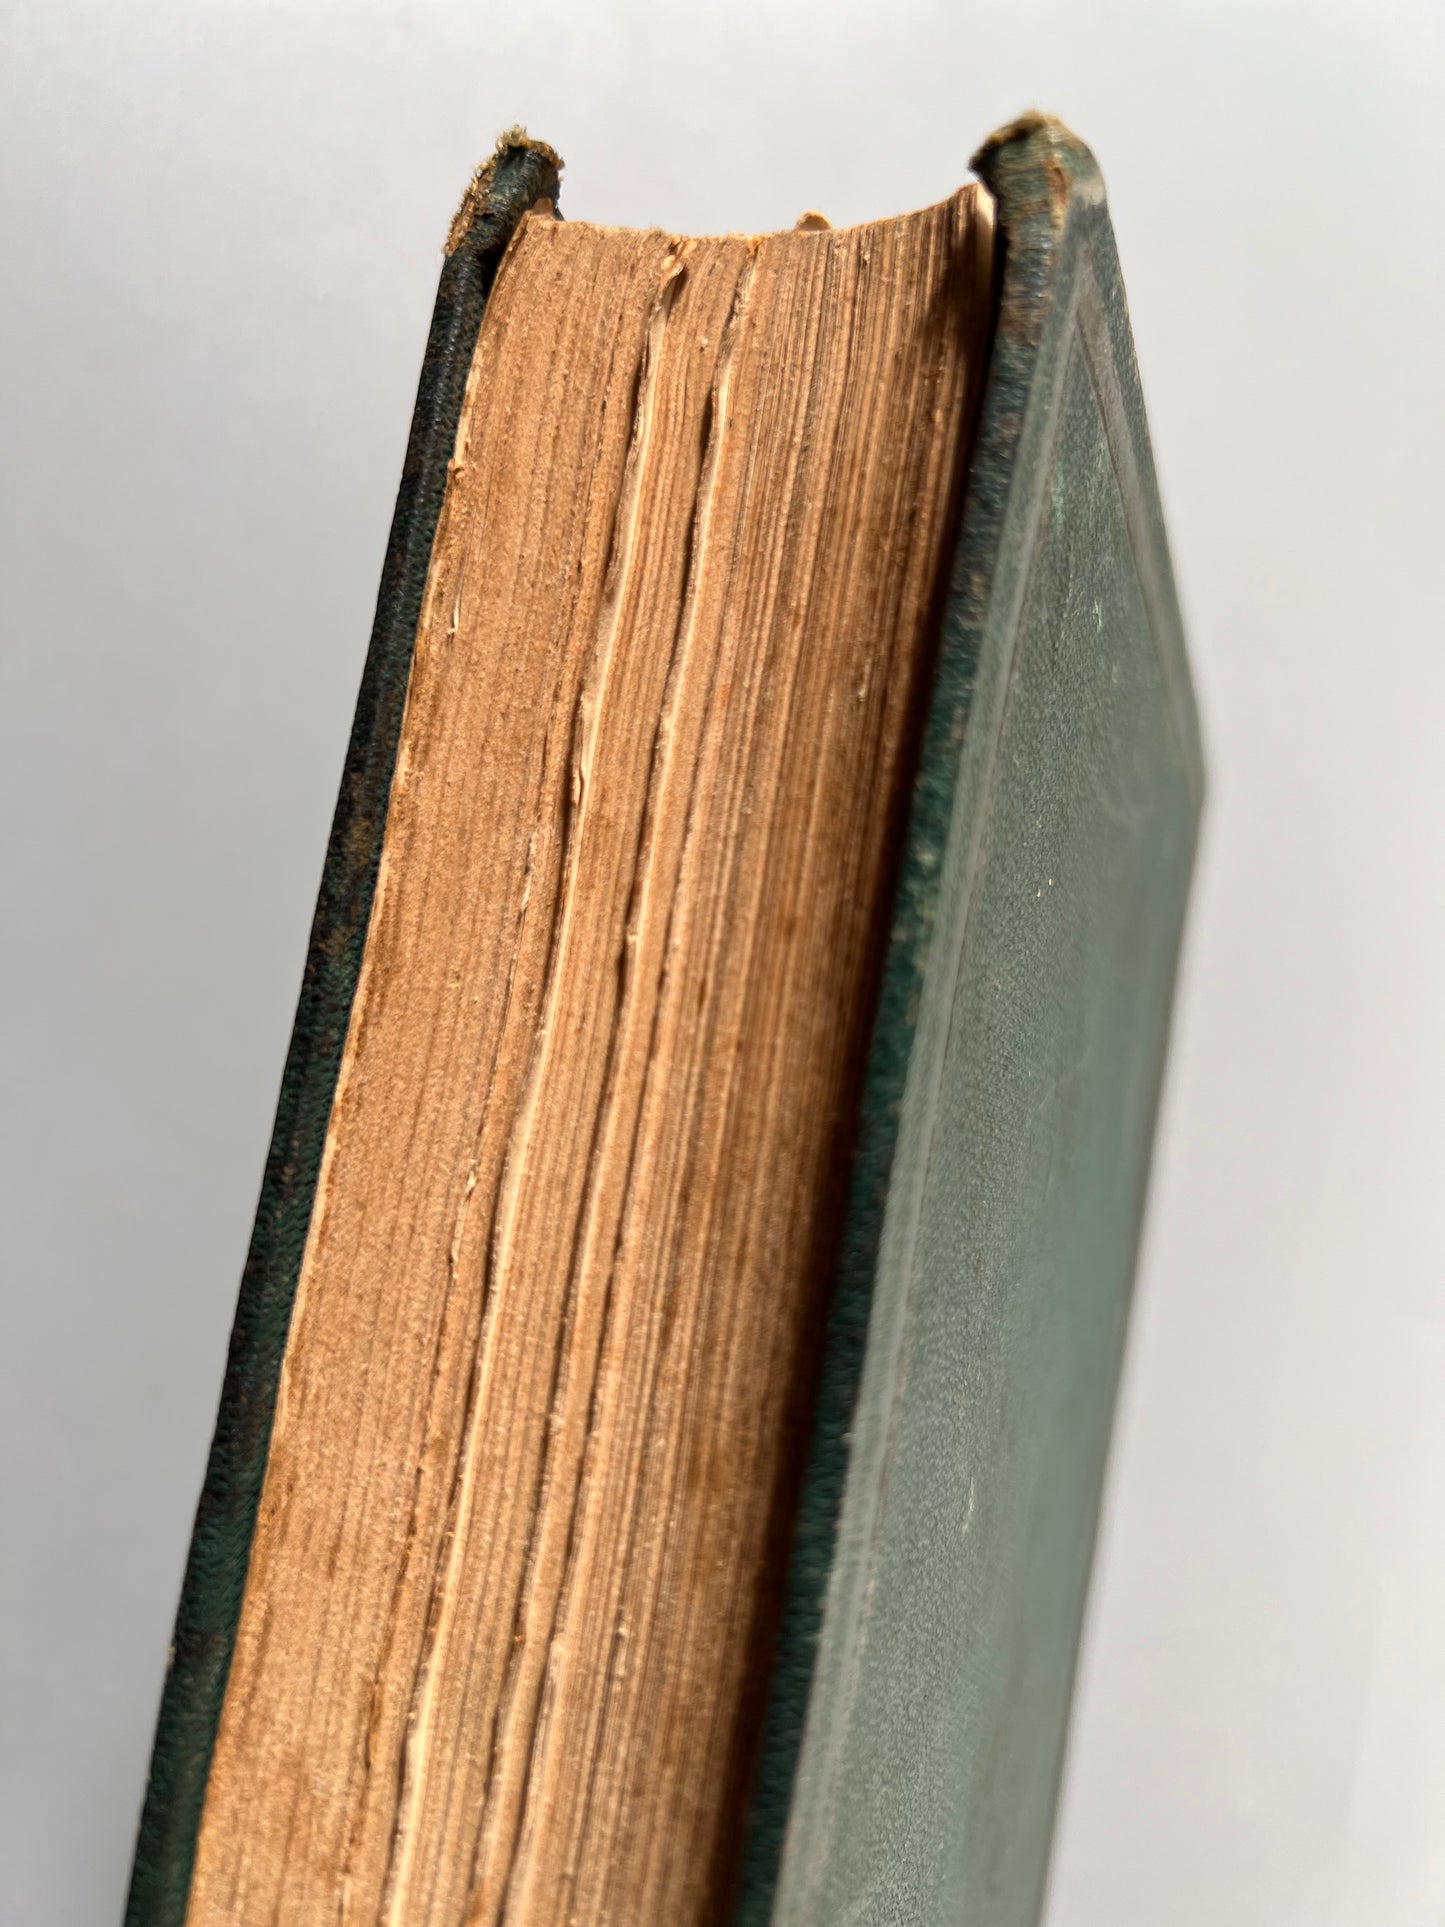 Mugeres de la Biblia, Joaquin Roca y Cornet - Librería española/ La amenidad literaria, 1864